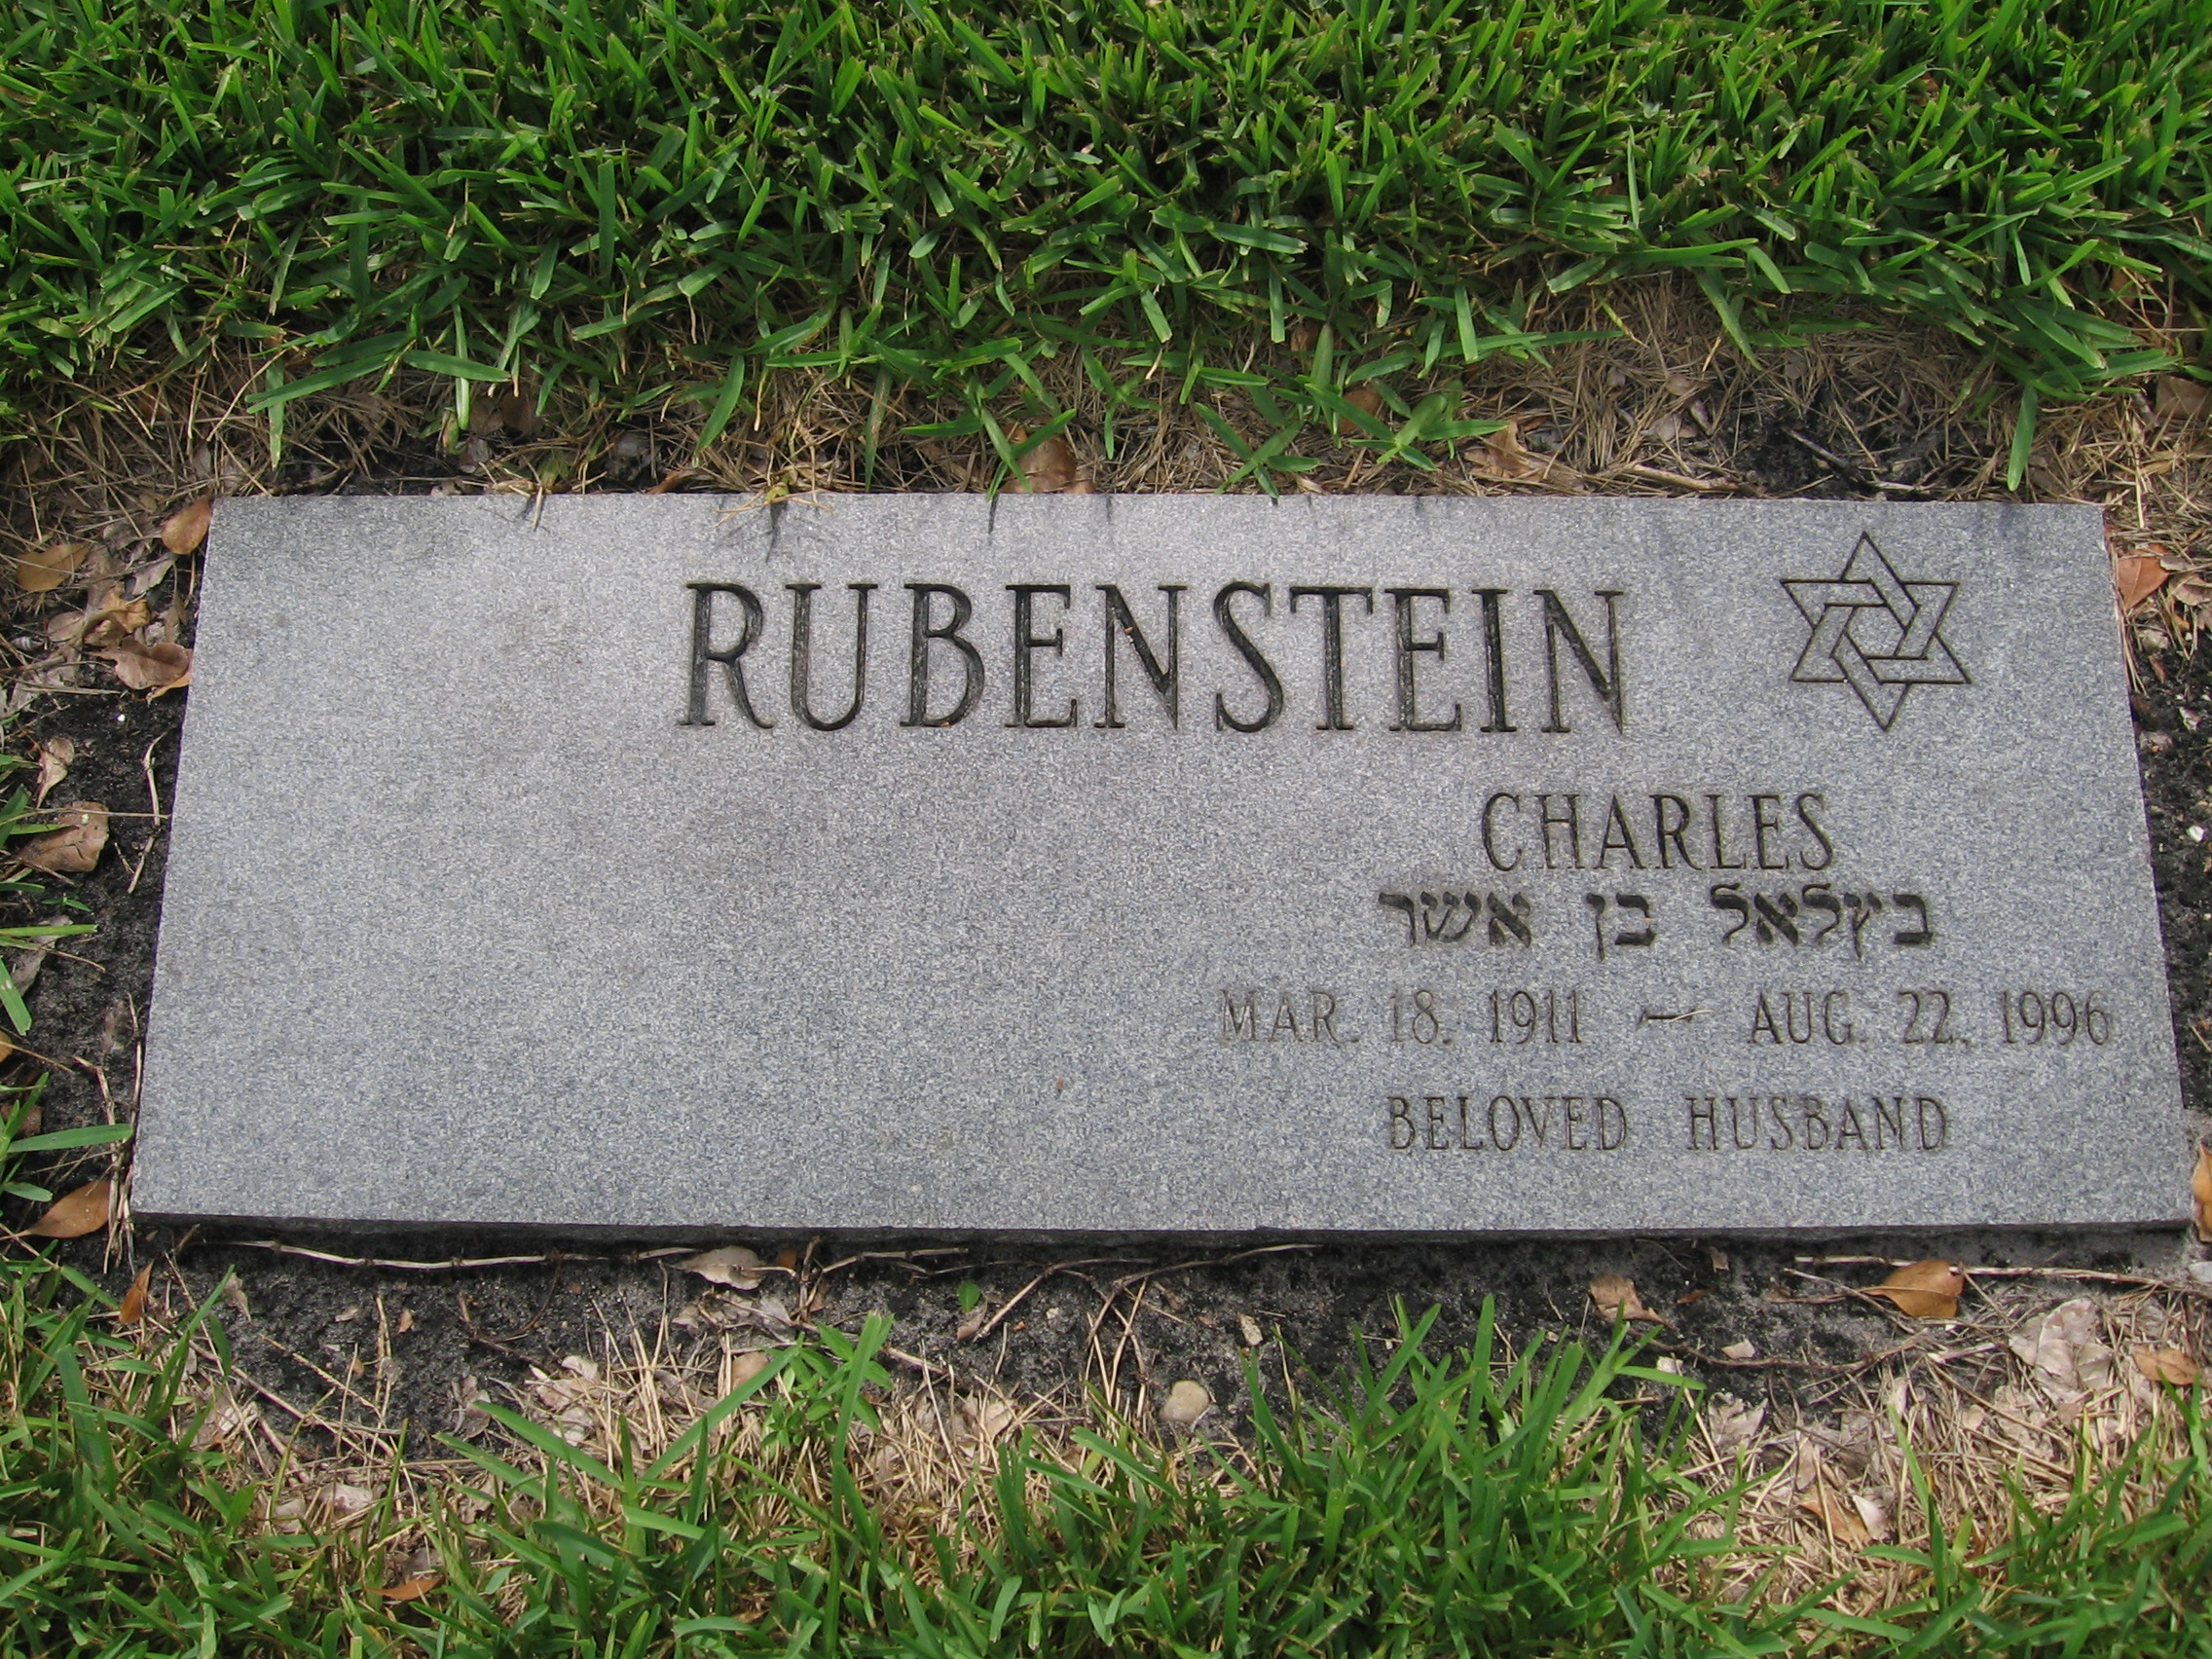 Charles Rubenstein